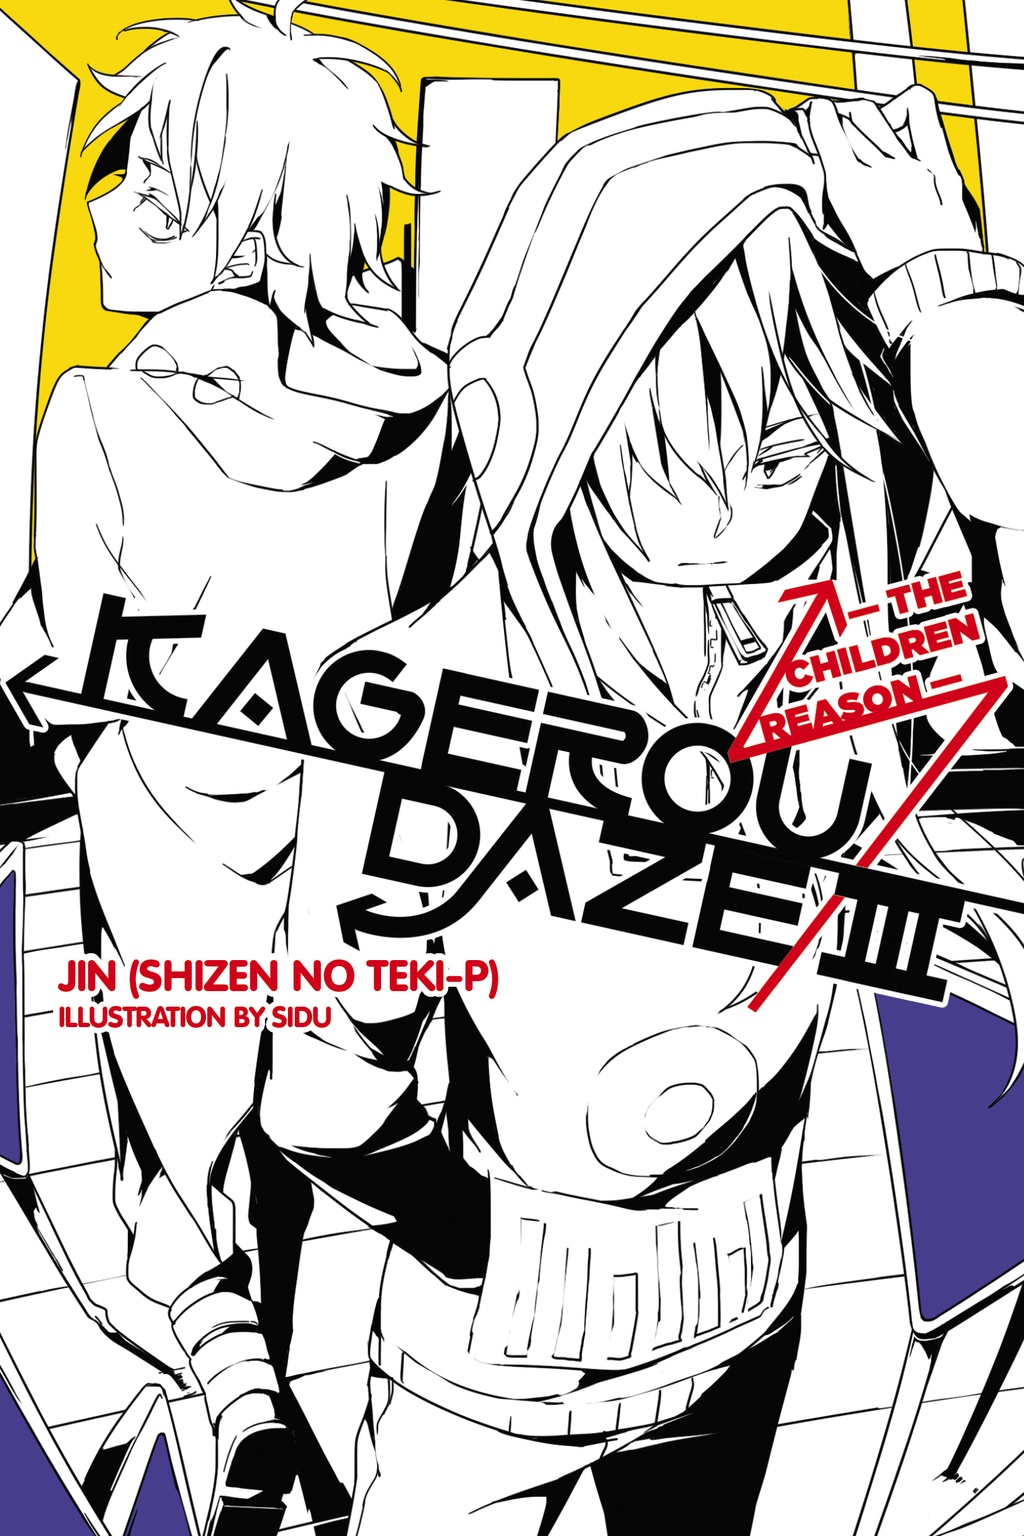 Kagerou Daze III -the children reason- | Kagerou Project Wiki | Fandom